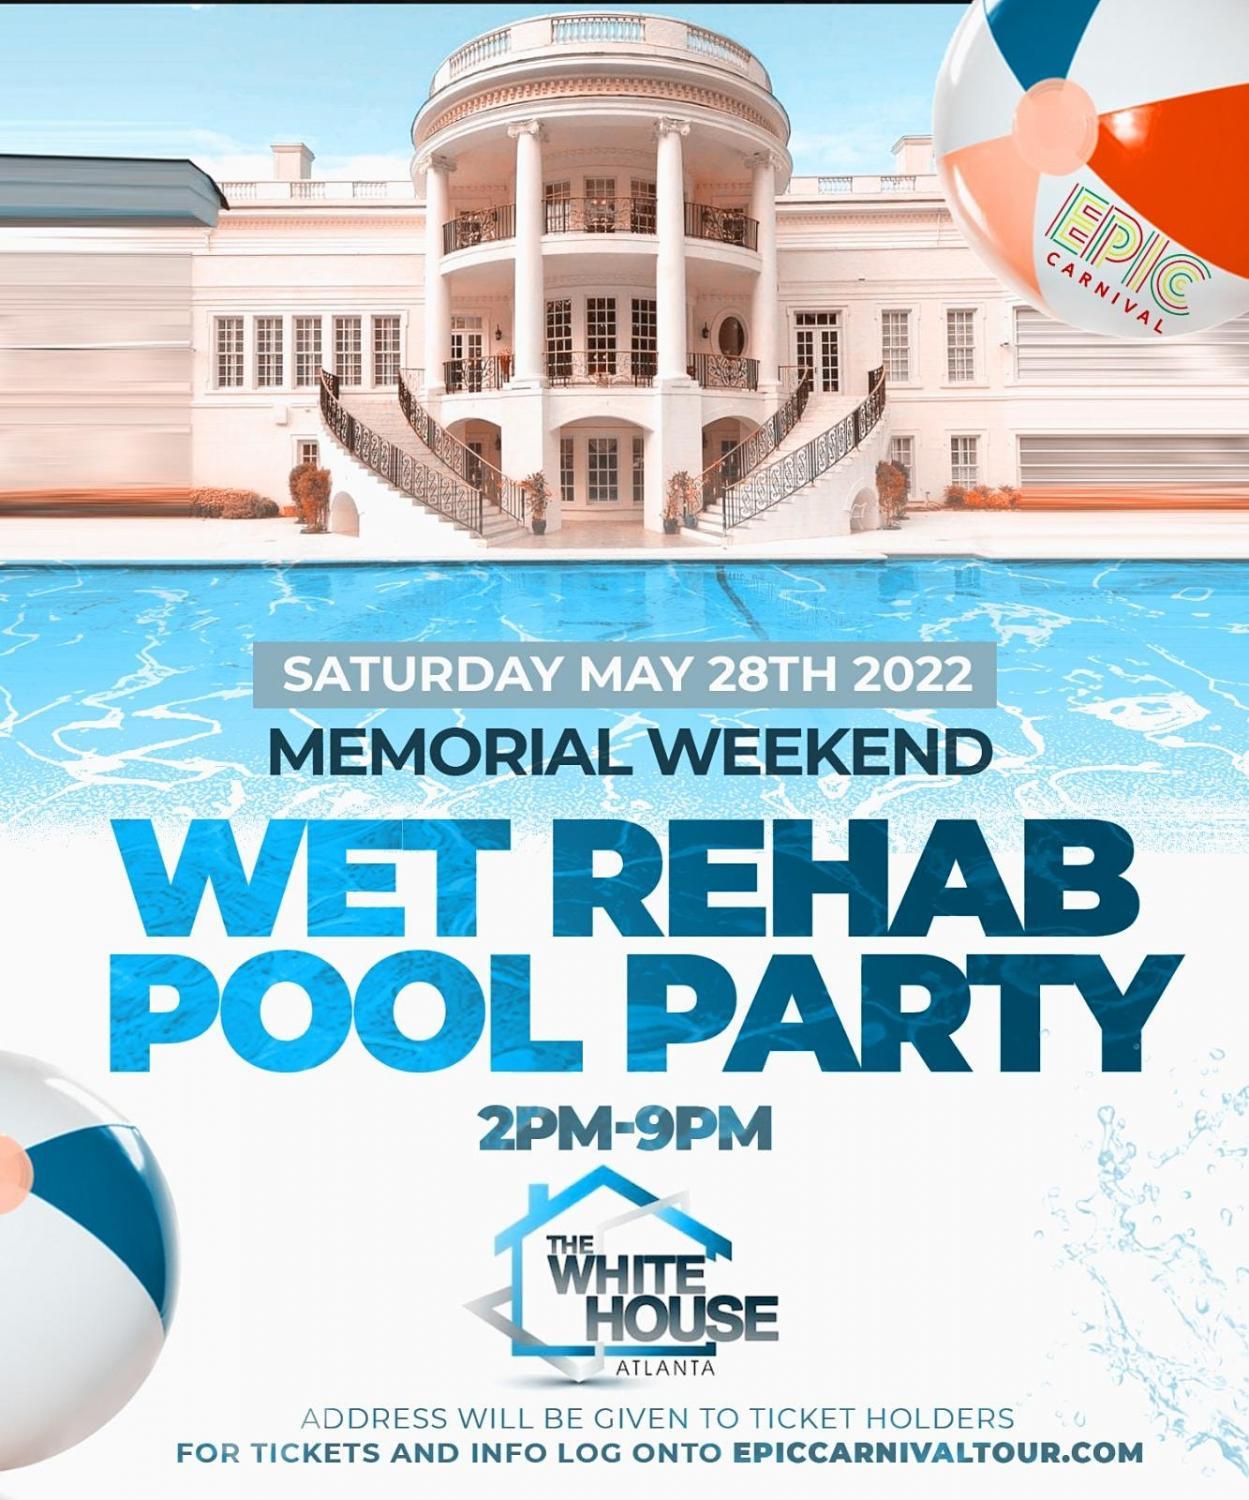 Wet REHAB Pool Party Atlanta | Memorial Weekend 2022